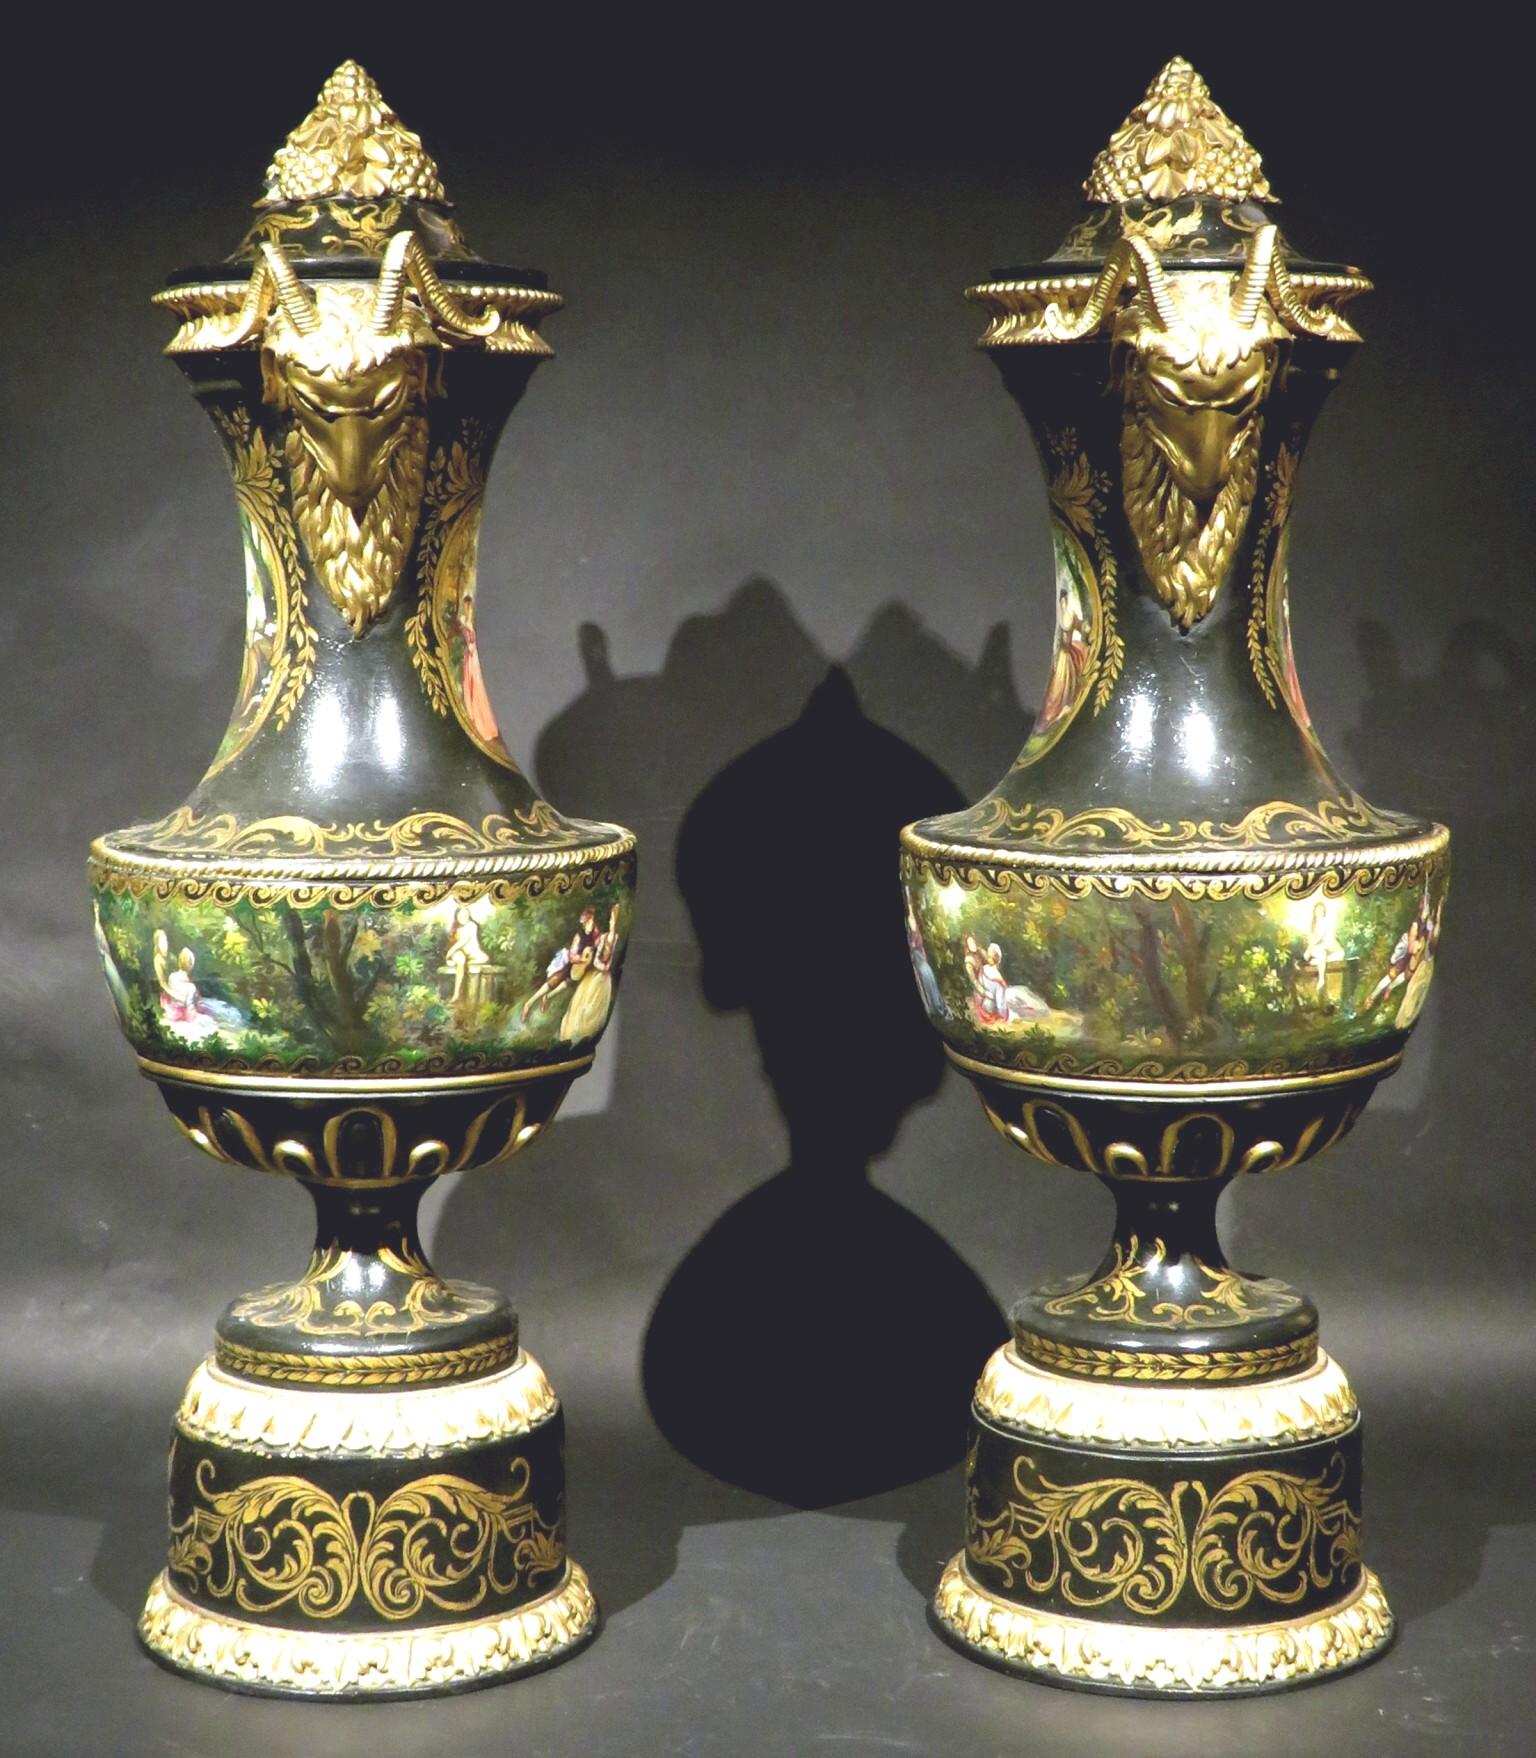 Ein sehr eindrucksvolles und hochdekoratives Paar ebonisierter Holzurnen aus dem 19. Jahrhundert, beide mit abnehmbaren Deckeln mit vergoldeten Kompositionsbeschlägen, die Körper insgesamt mit handgemalten vergoldeten Motiven und romantischen